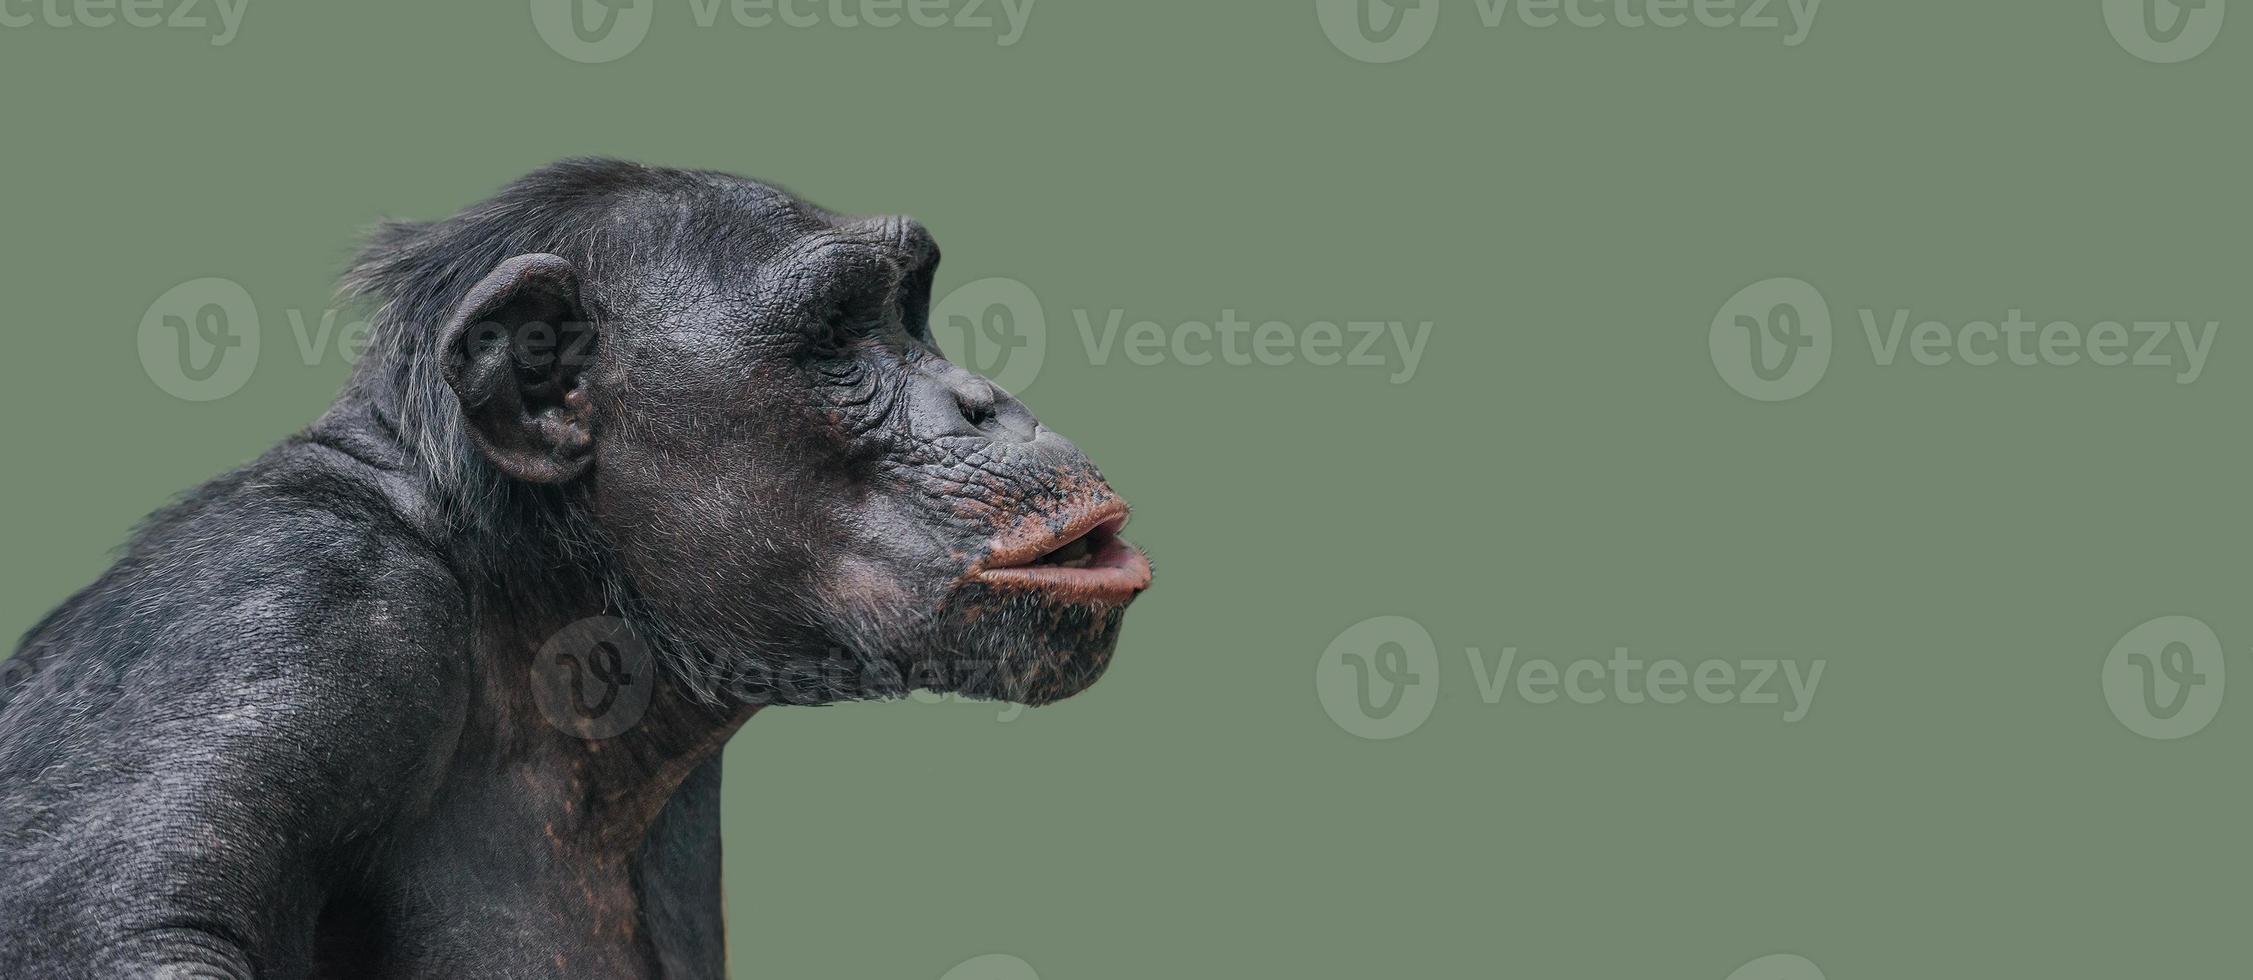 retrato de chimpanzé curioso e admirado em fundo uniforme e suave foto